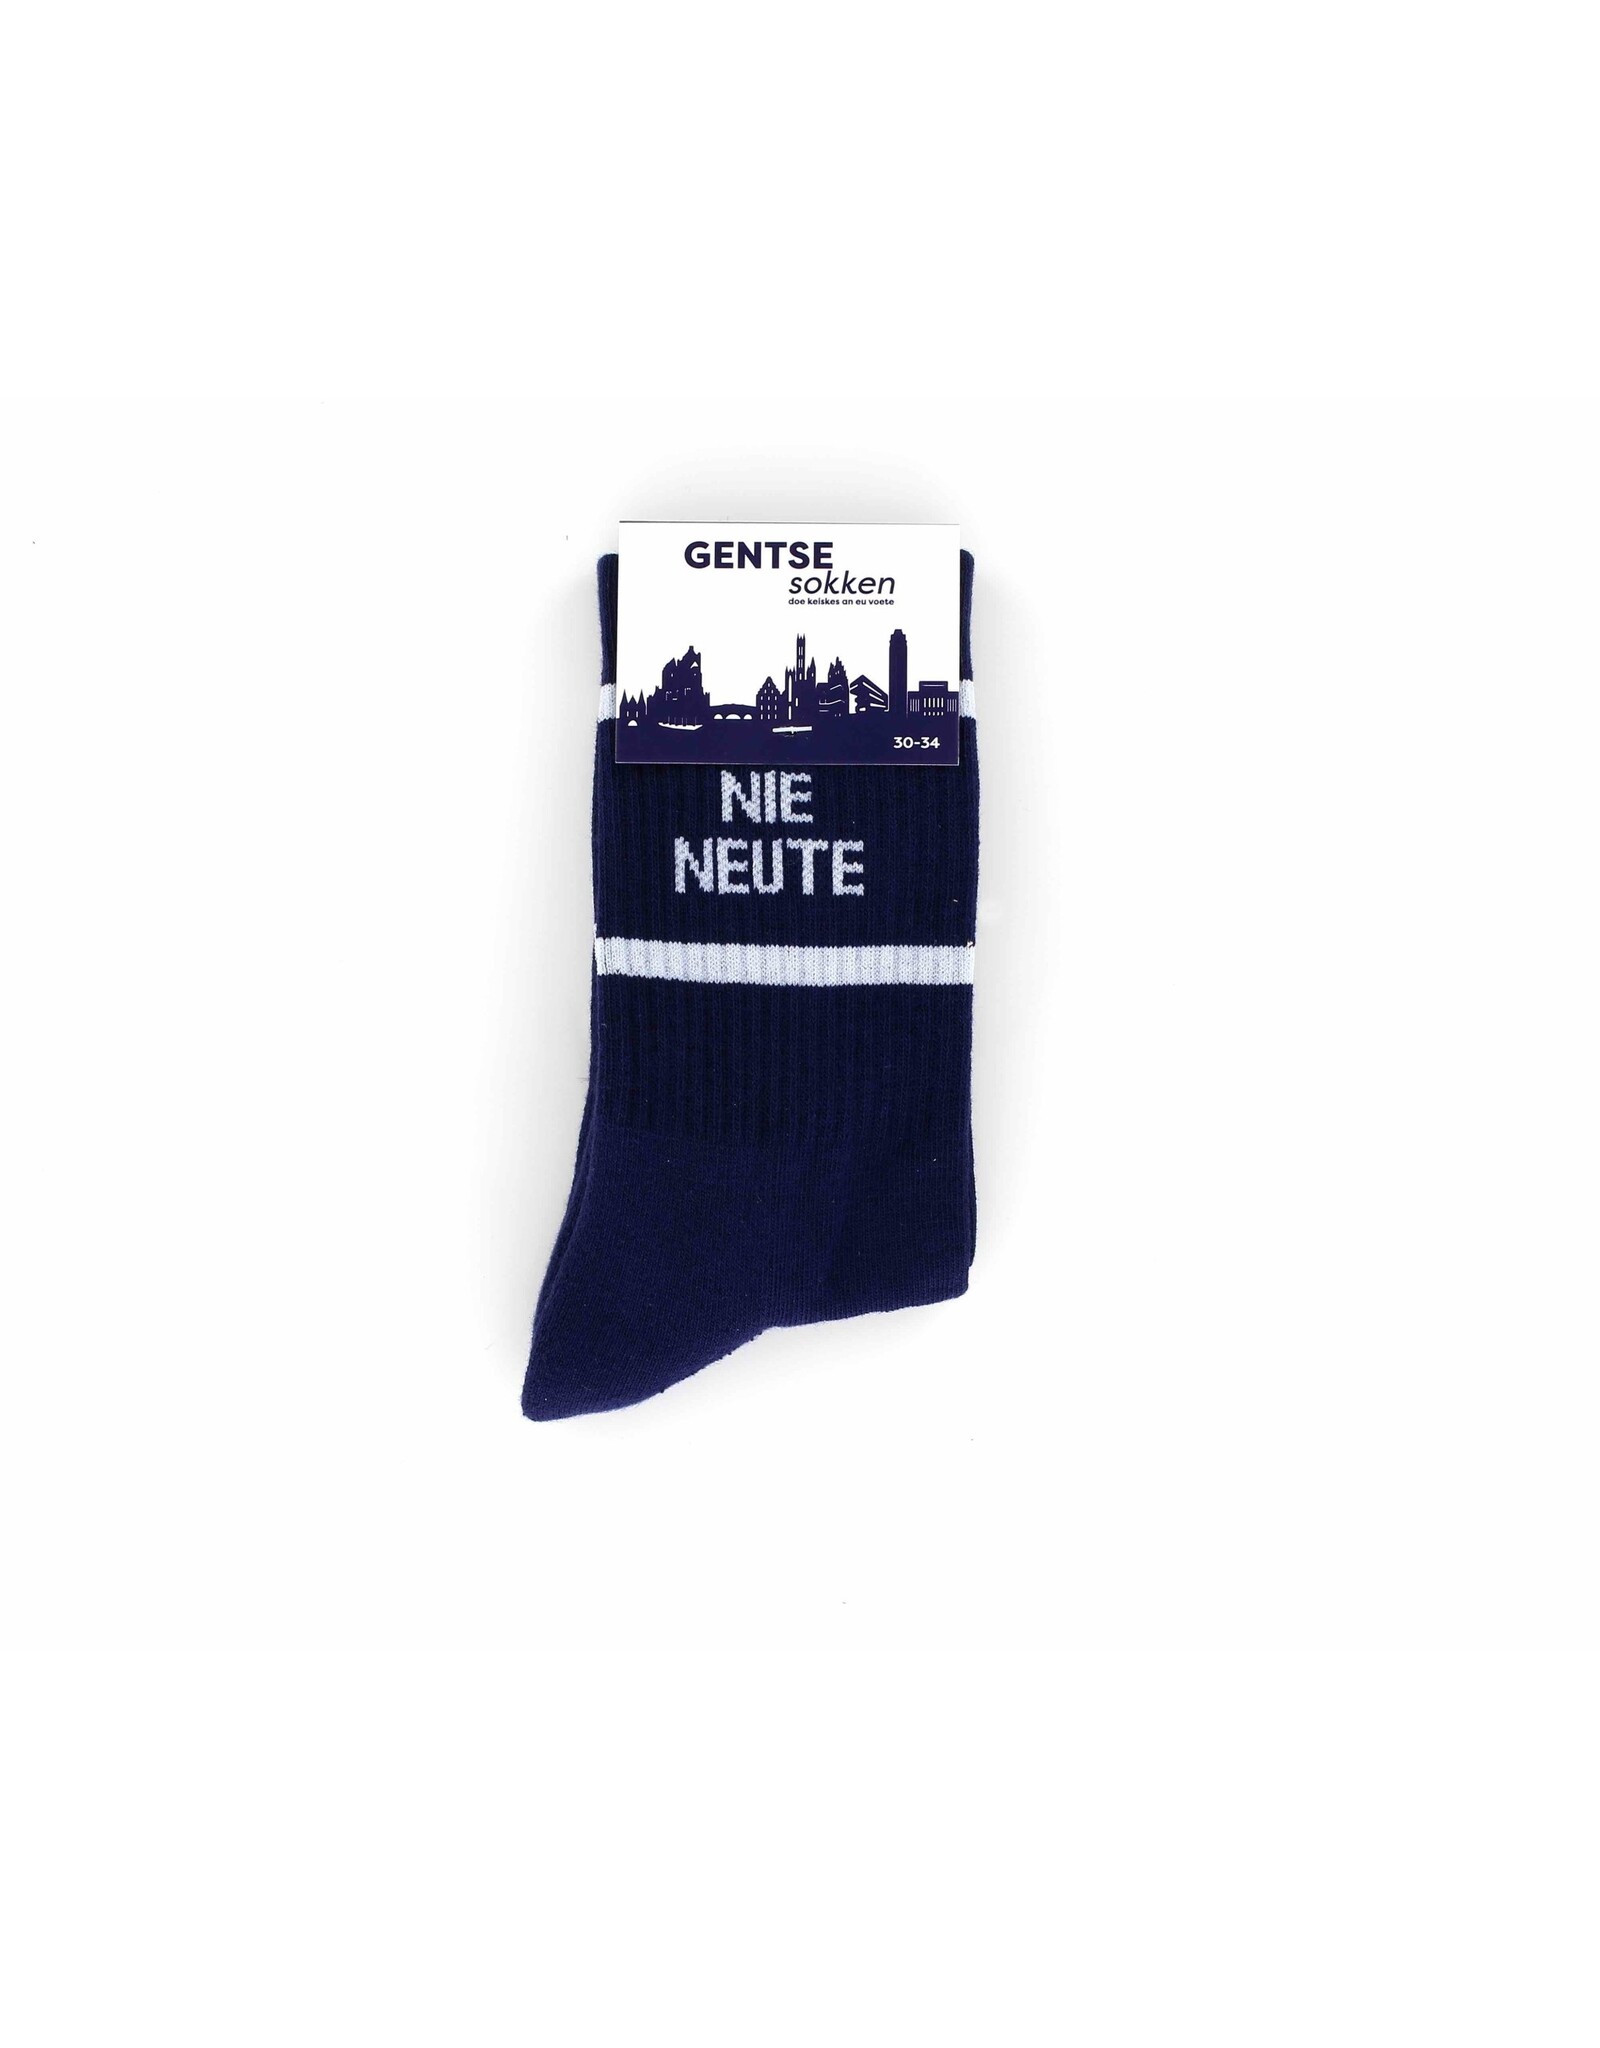 Gentse sokken Gentse Kindersokken - Nie neute - Katoen